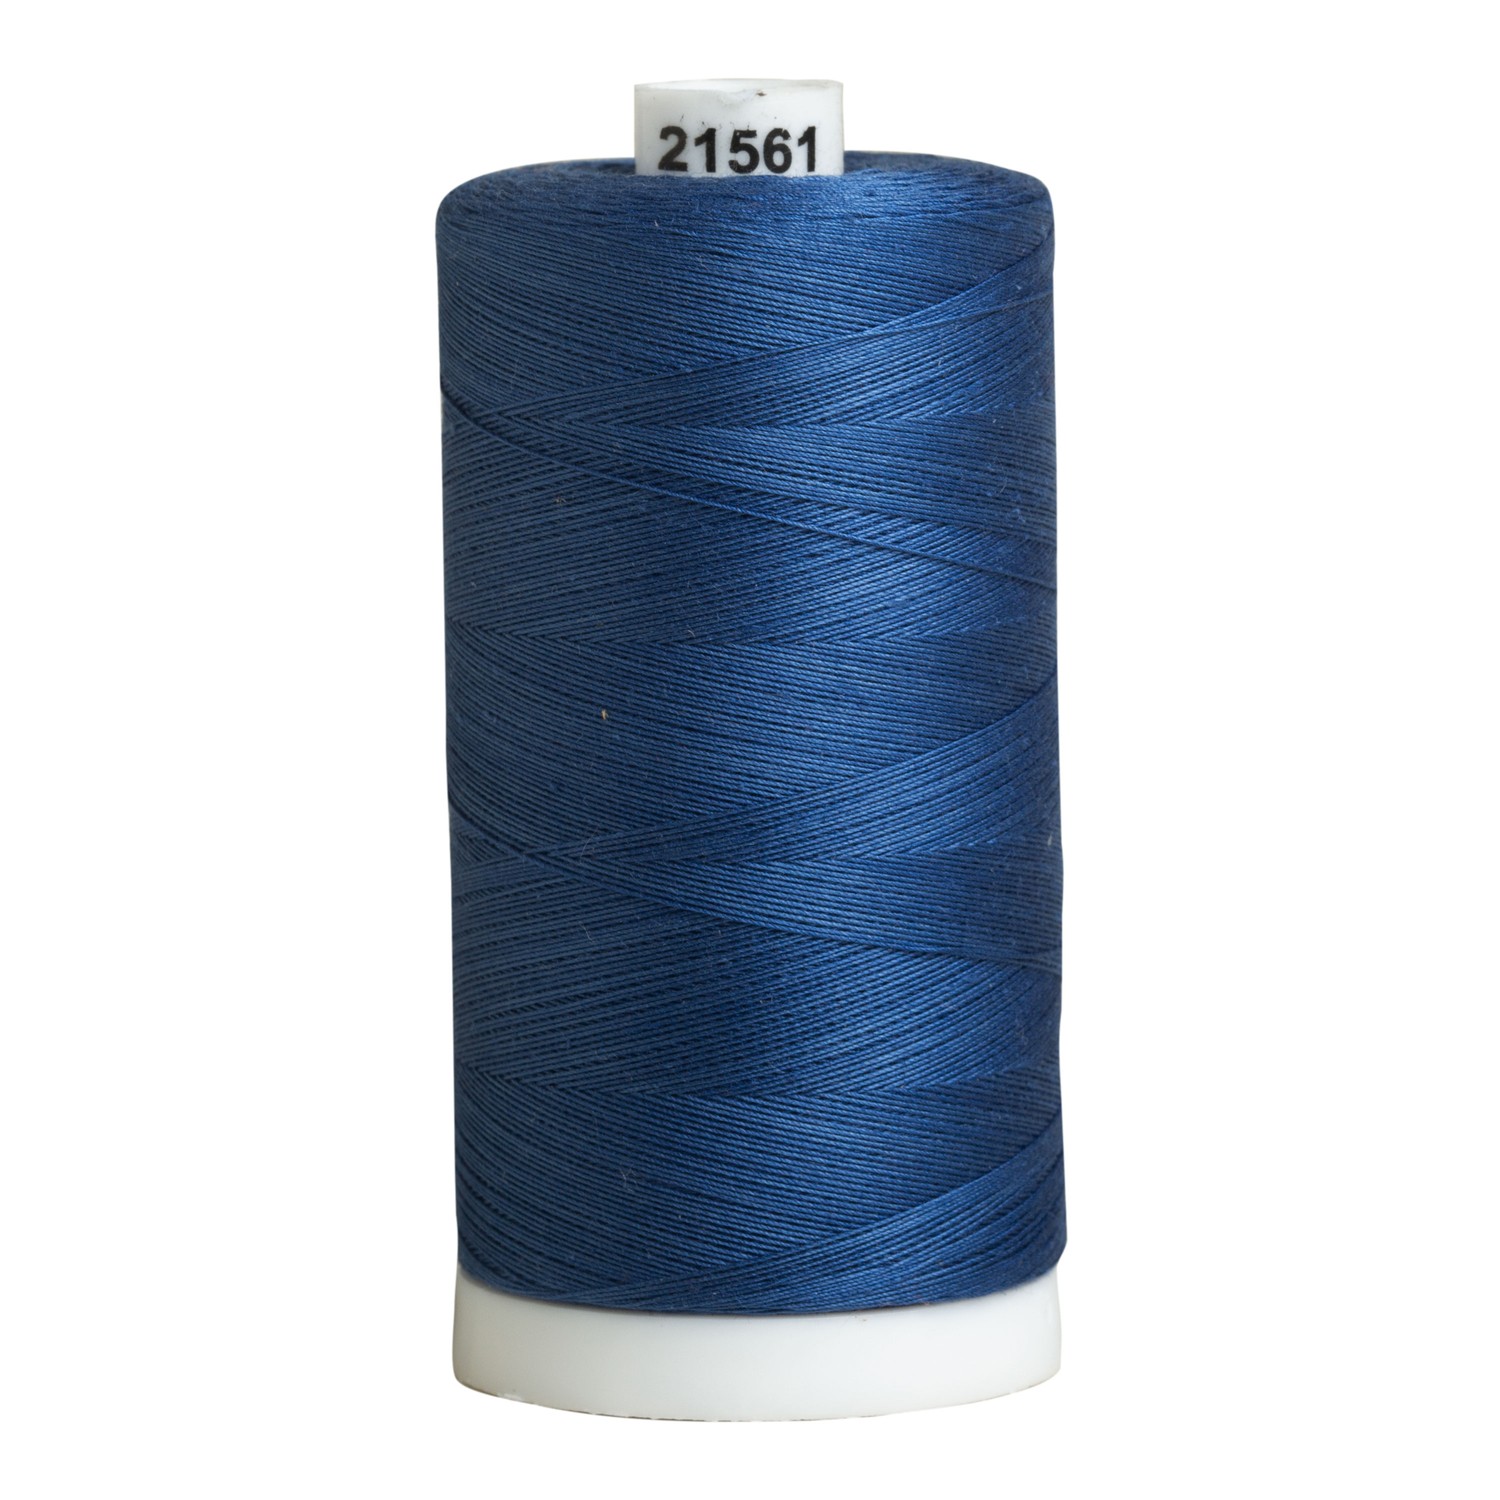 Product Details  1 Midnight Blue - Thread, Zen Shin (20/2 spun